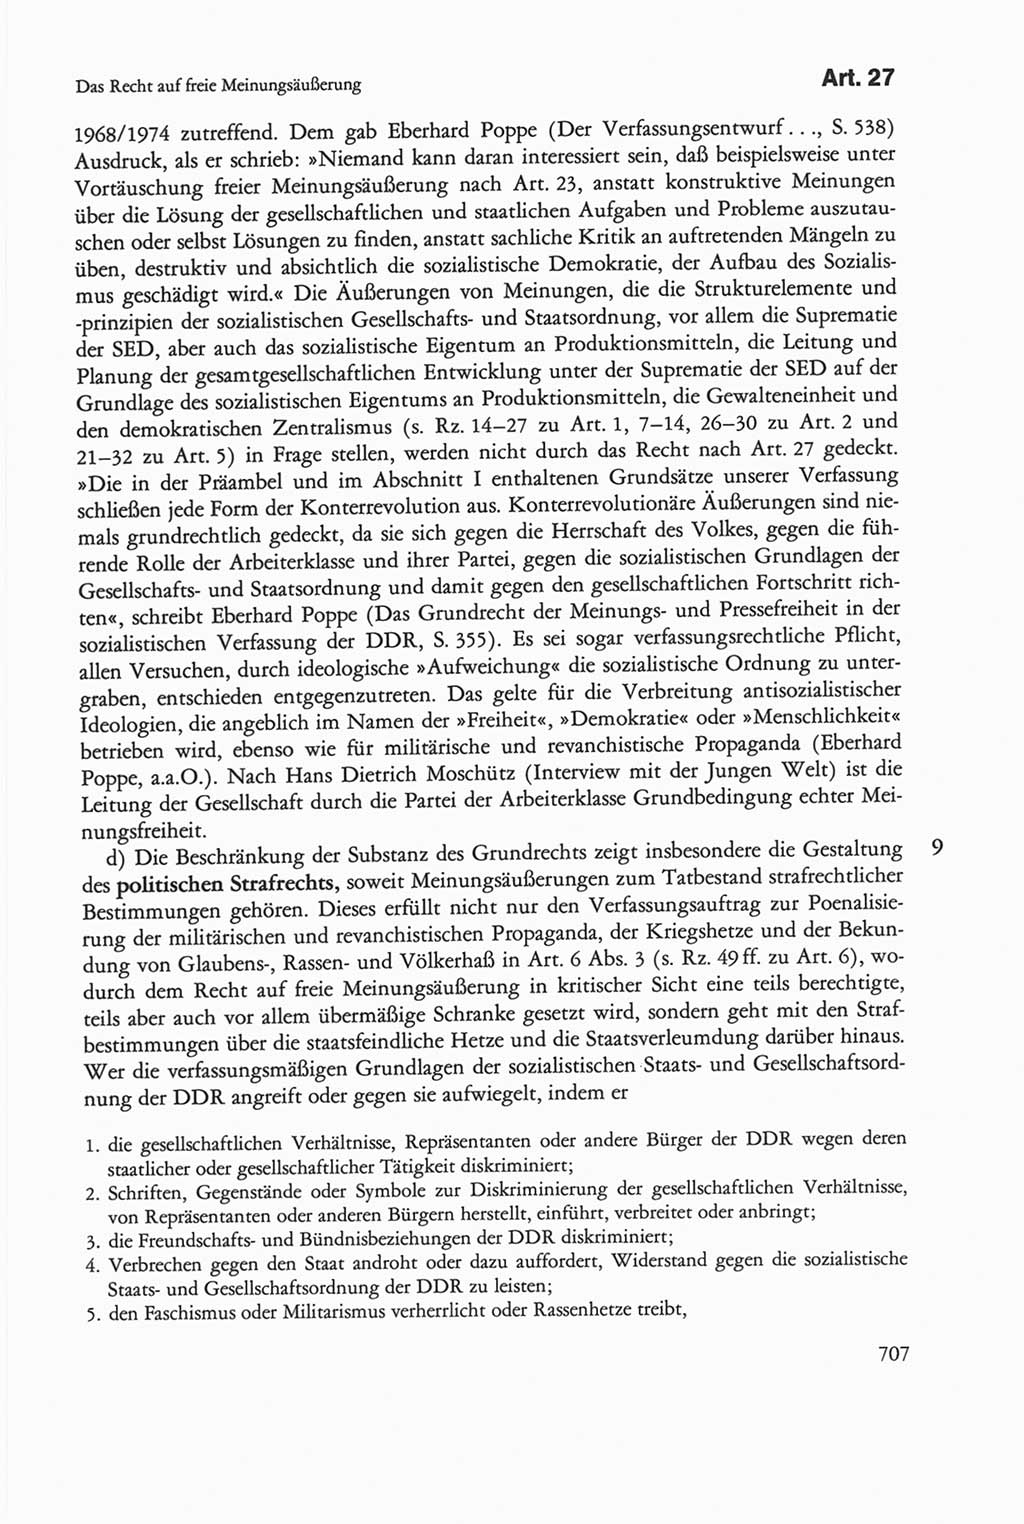 Die sozialistische Verfassung der Deutschen Demokratischen Republik (DDR), Kommentar mit einem Nachtrag 1997, Seite 707 (Soz. Verf. DDR Komm. Nachtr. 1997, S. 707)